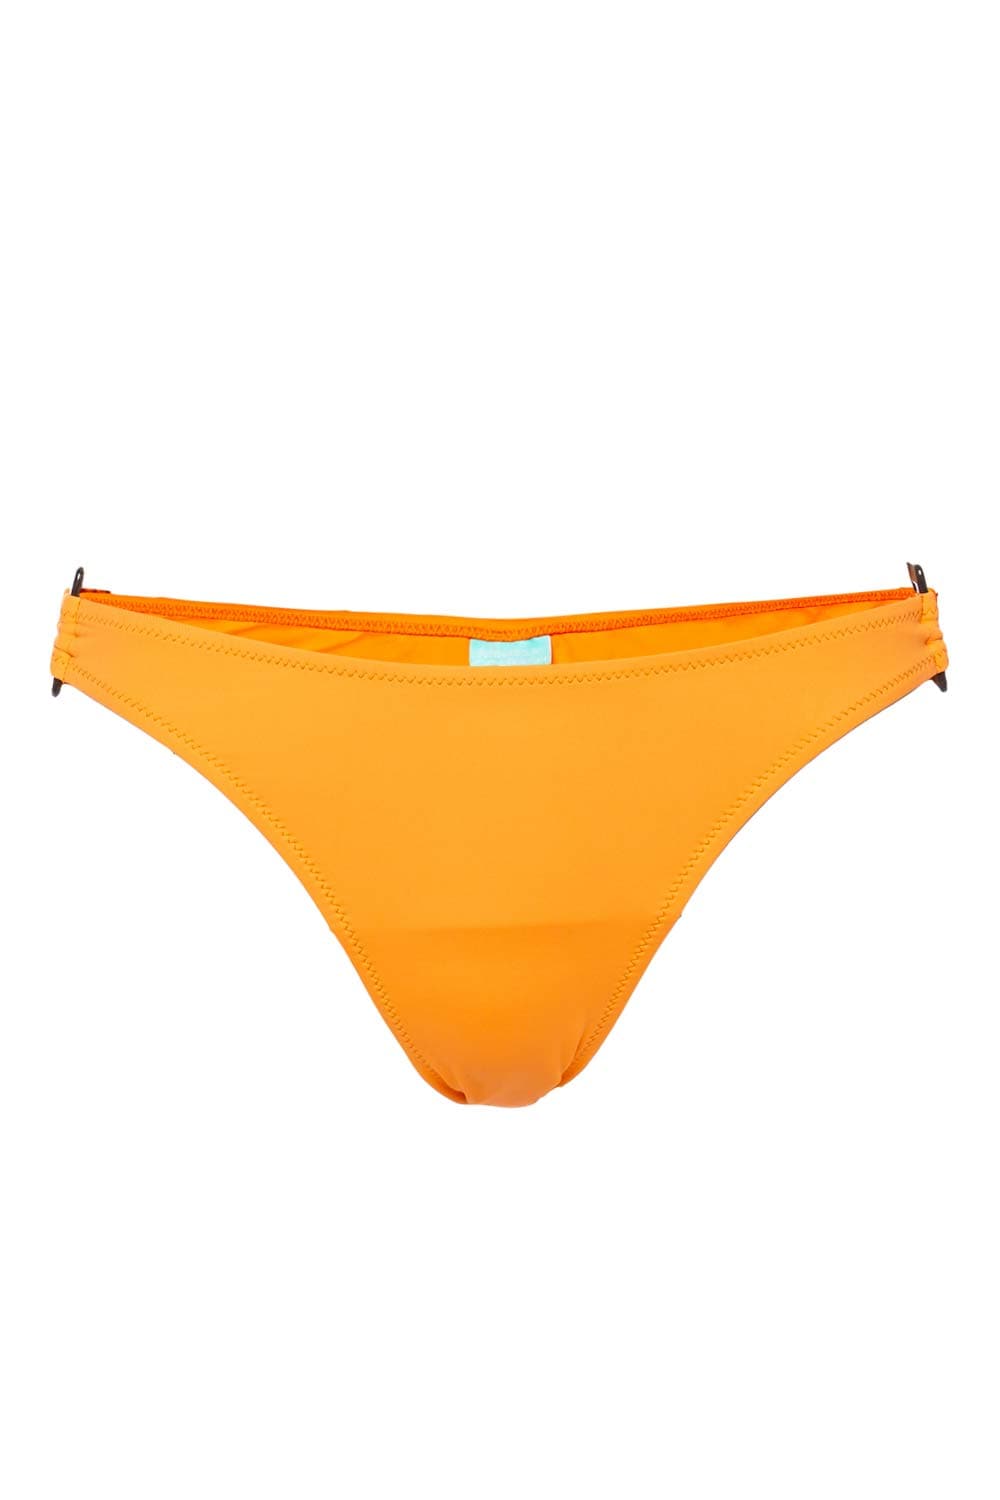 Melissa Odabash Paris Orange Bikini Bottoms